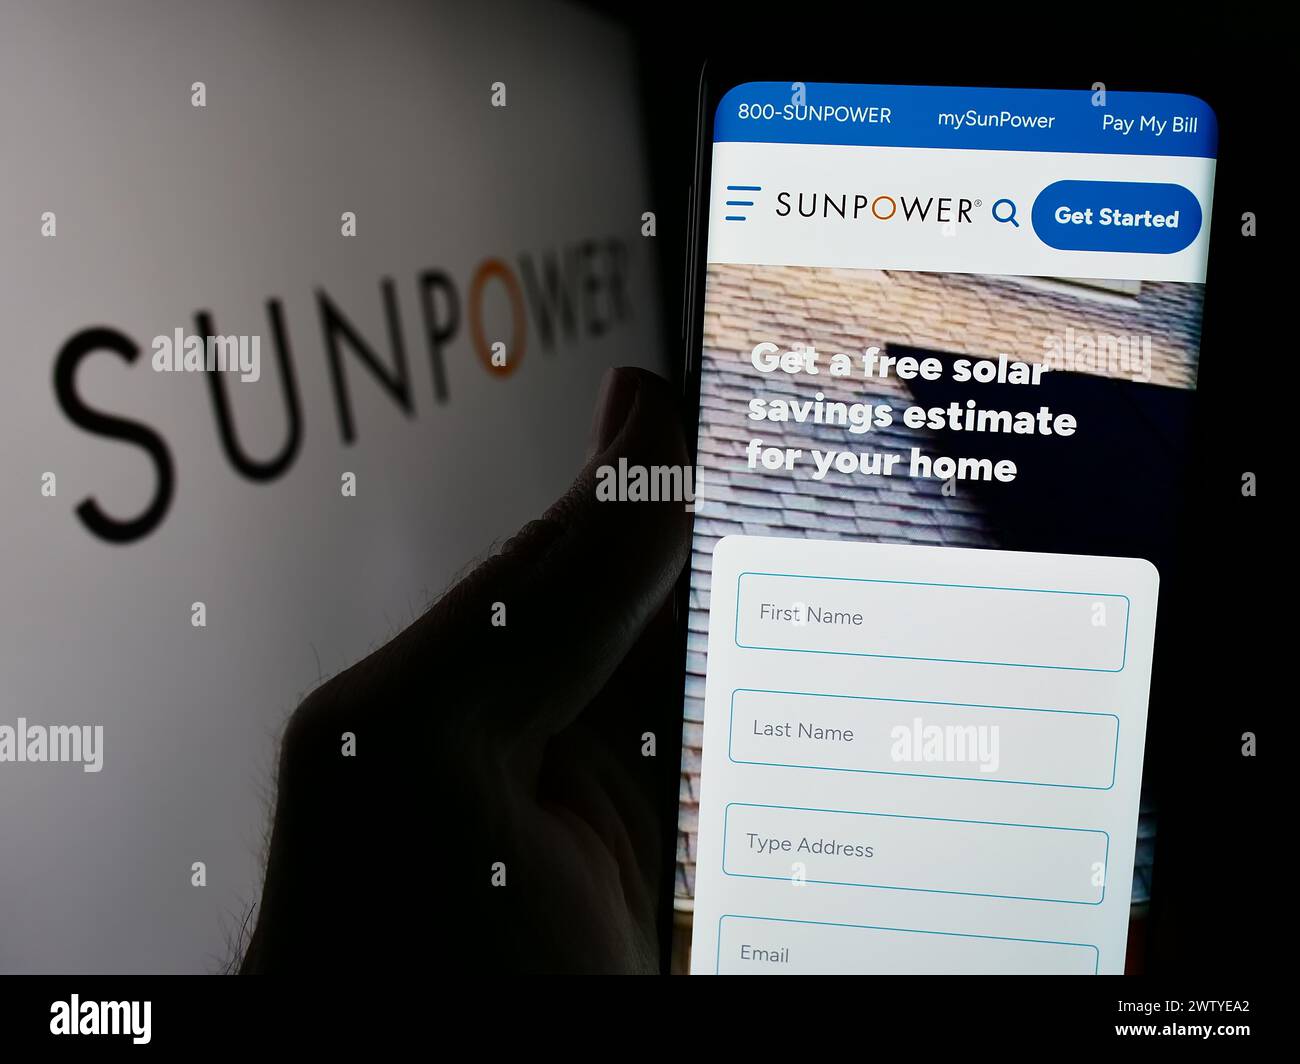 Persona che detiene un cellulare con pagina web della società fotovoltaica statunitense SunPower Corporation davanti al logo. Messa a fuoco al centro del display del telefono. Foto Stock